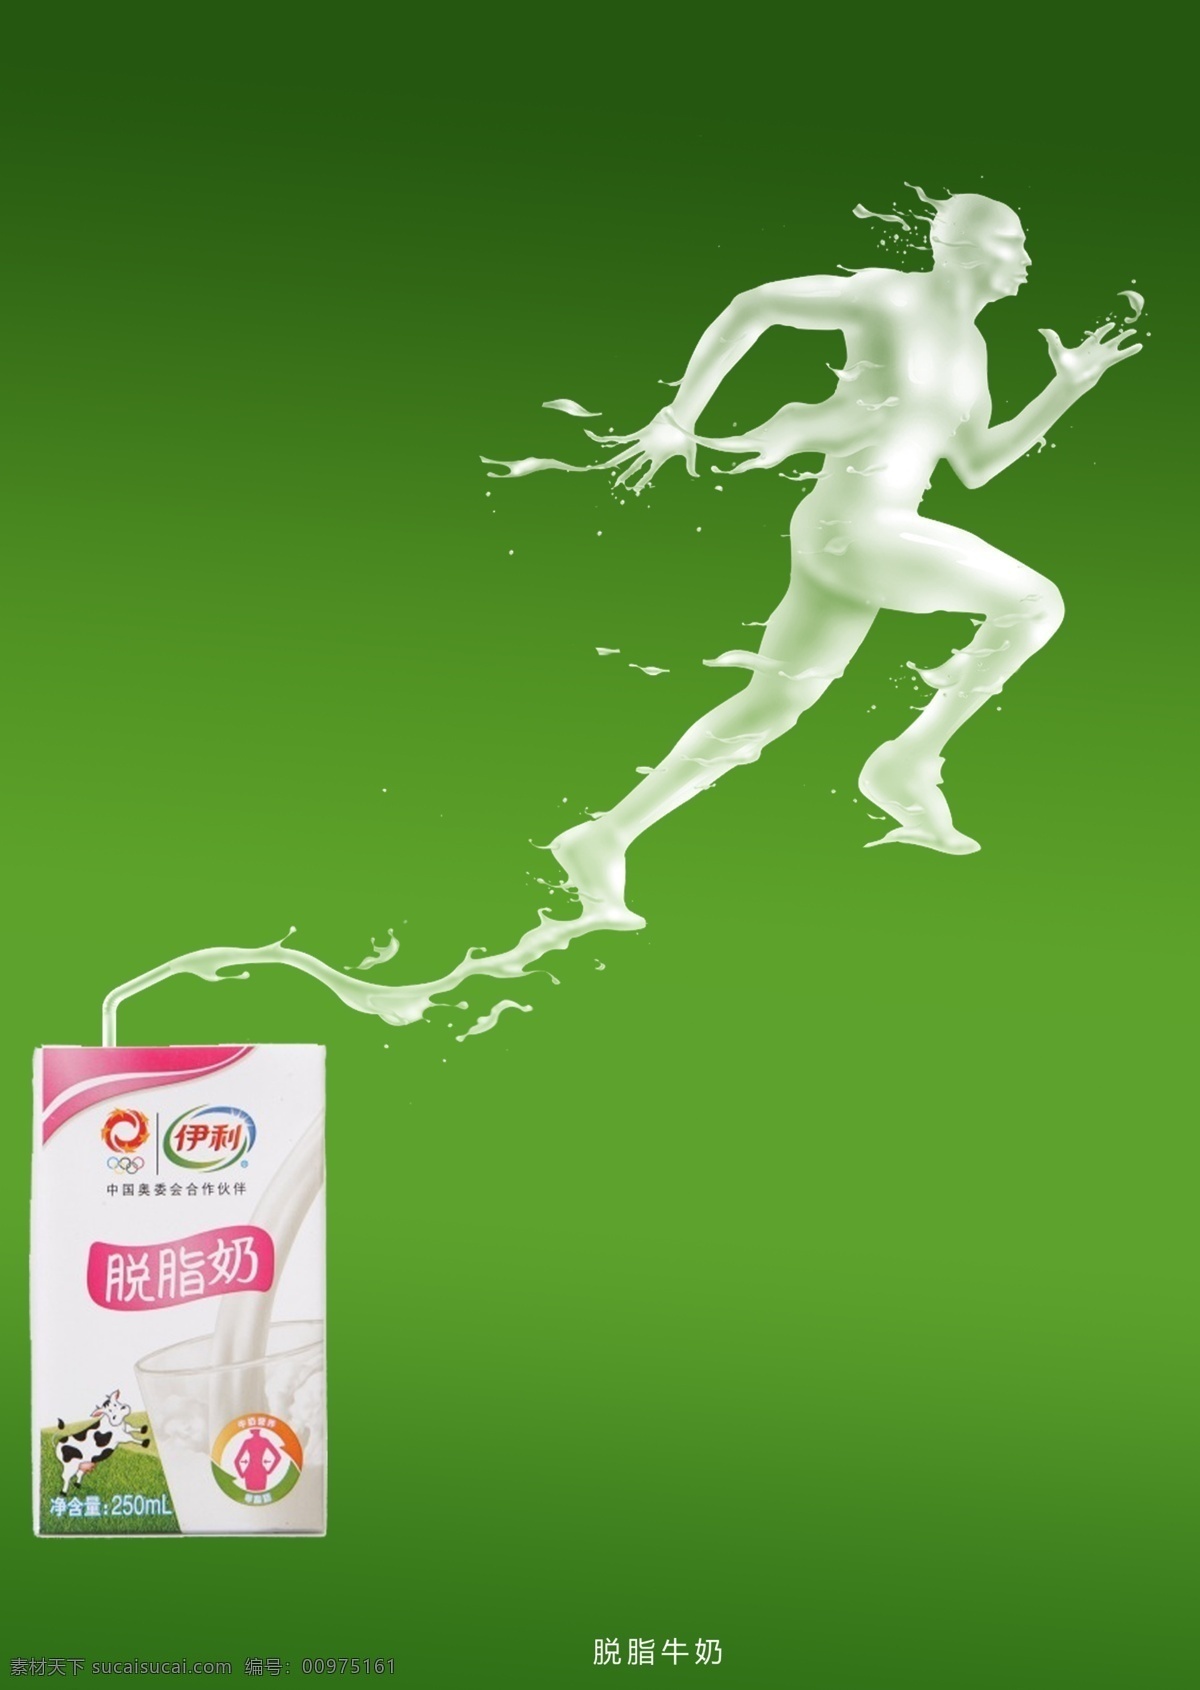 脱脂 牛奶 创意 招贴 脱脂牛奶 运动 招贴设计 绿色背景 广告创意